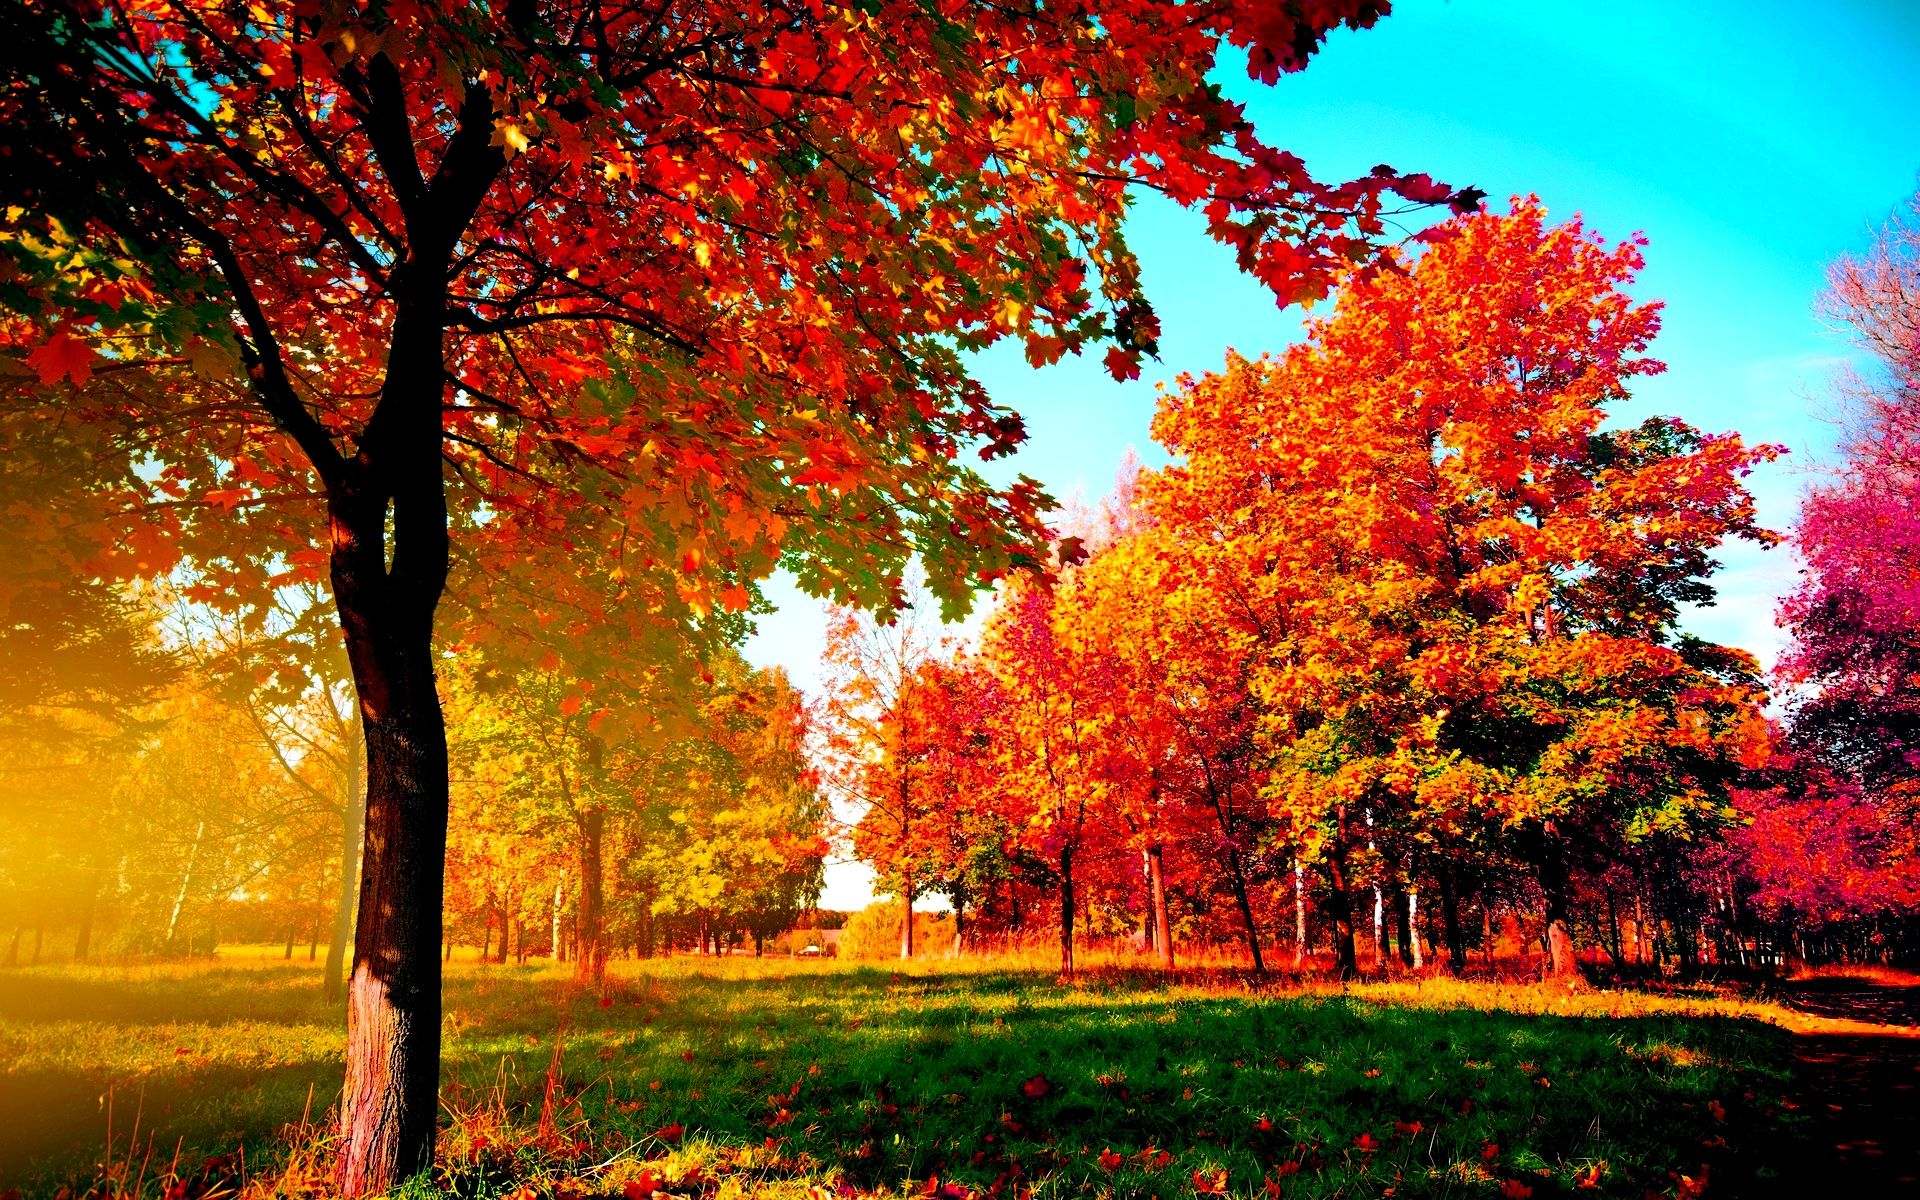 Autumn Trees wallpaper free | g | Pinterest | 3d wallpaper, Fall ...